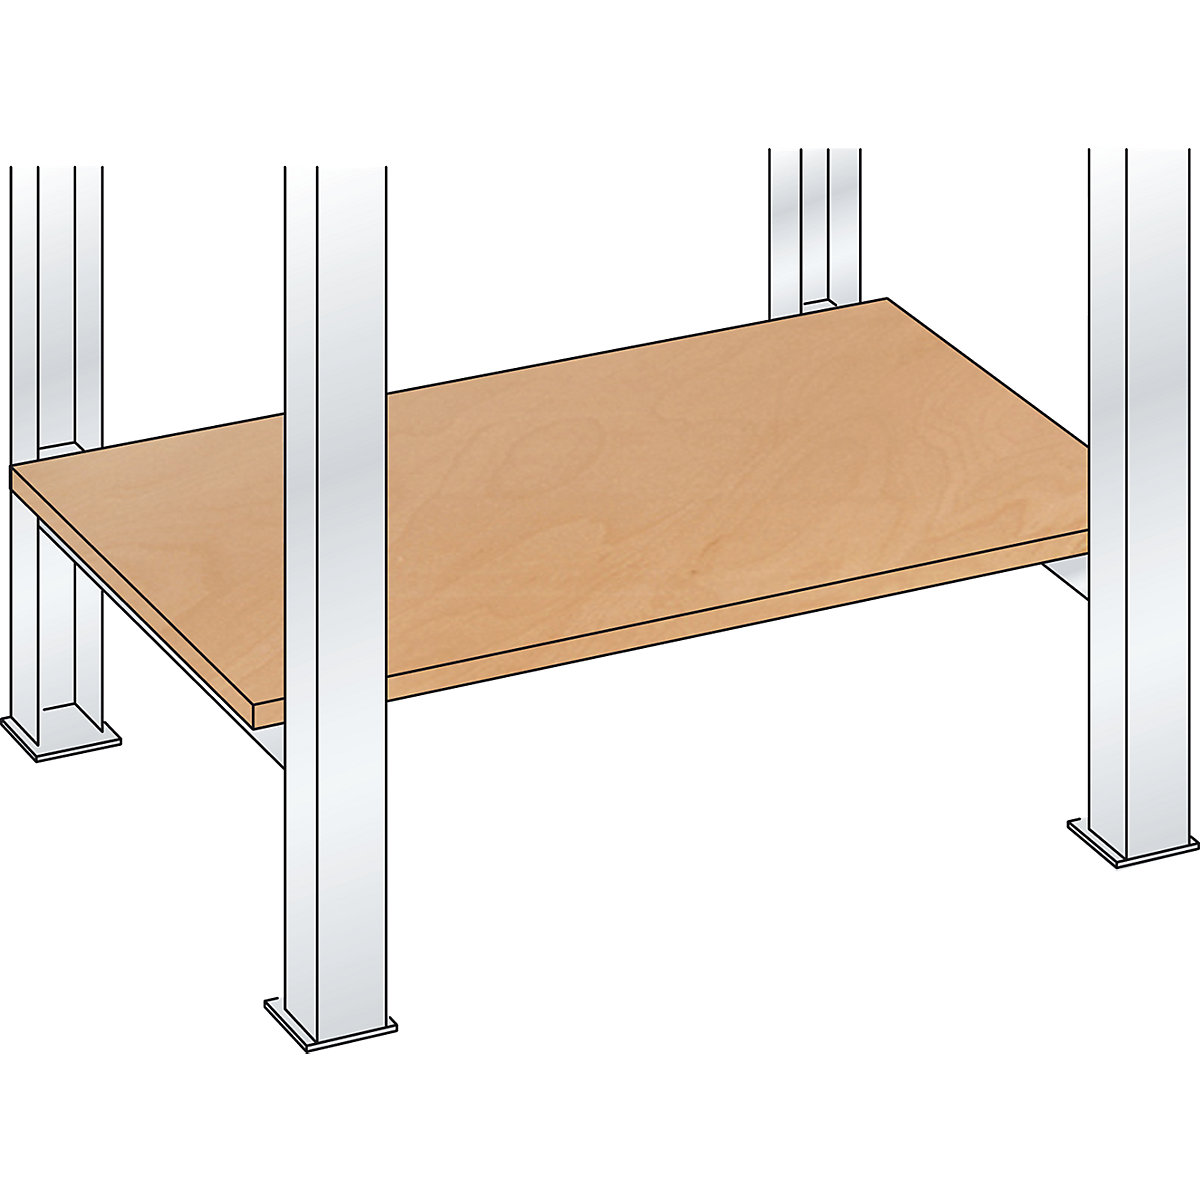 Stavebnicový systém pracovního stolu, odkládací police z překližky Multiplex - LISTA